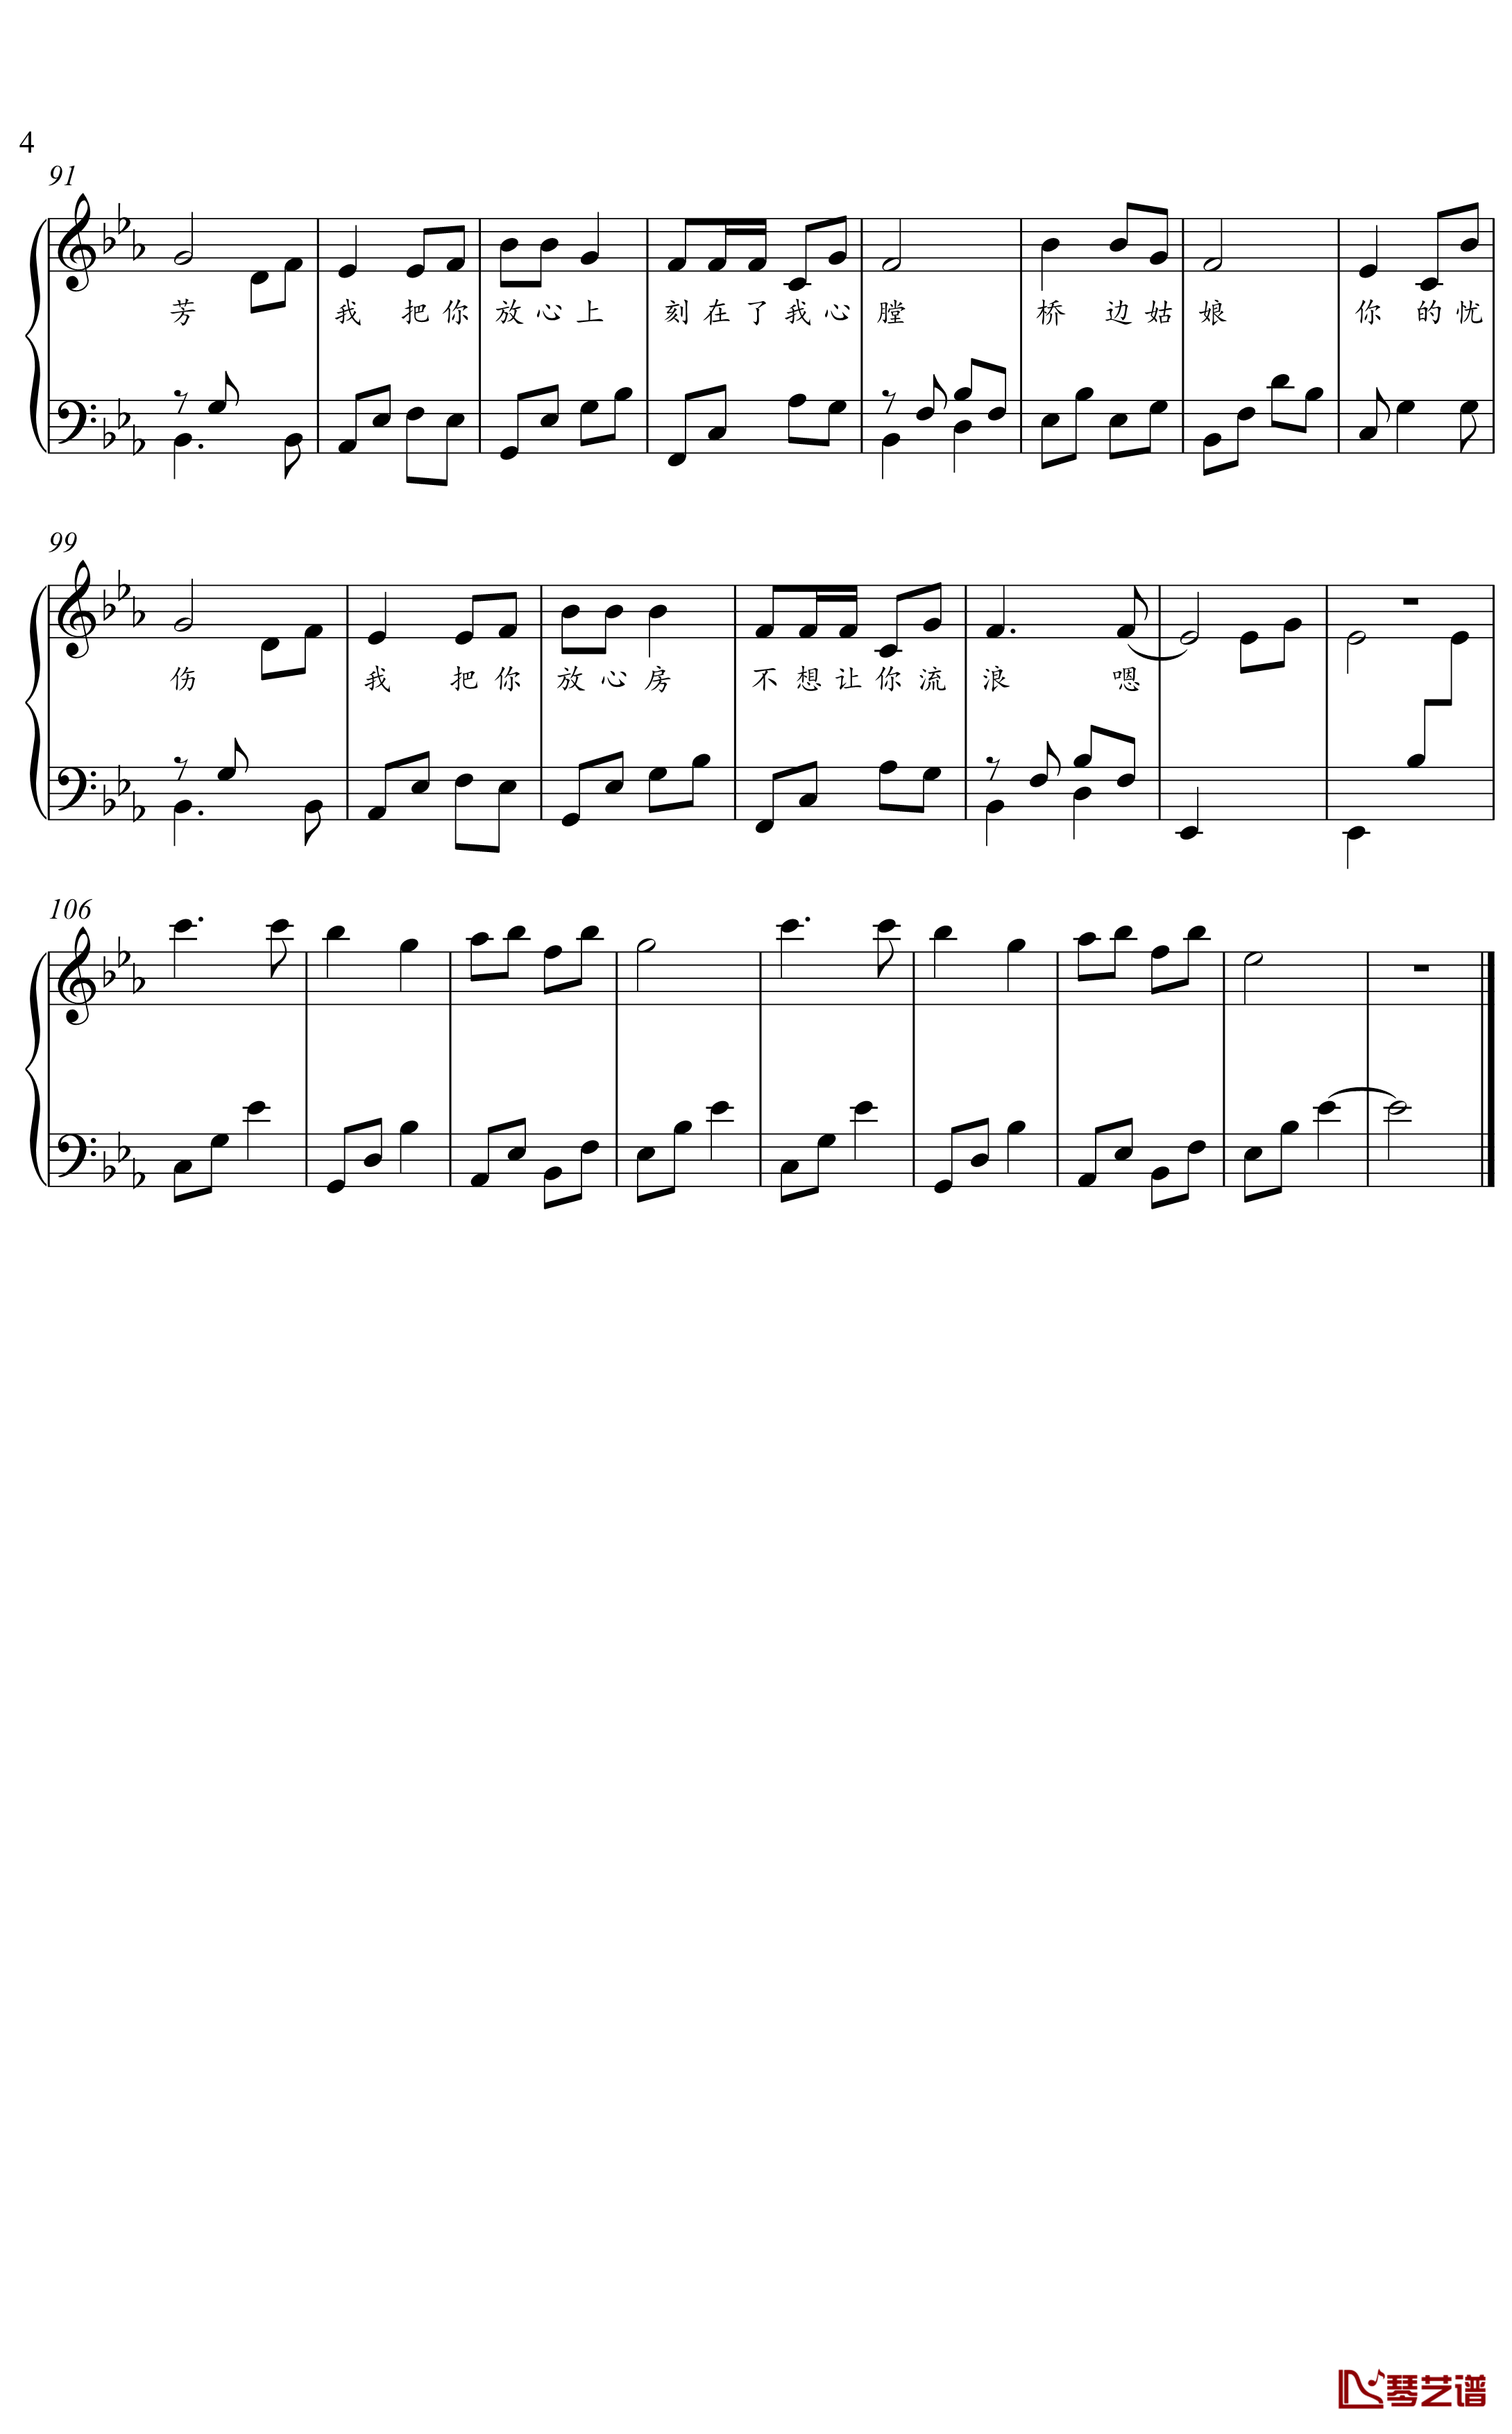 桥边姑娘钢琴谱 简化独奏谱2001034